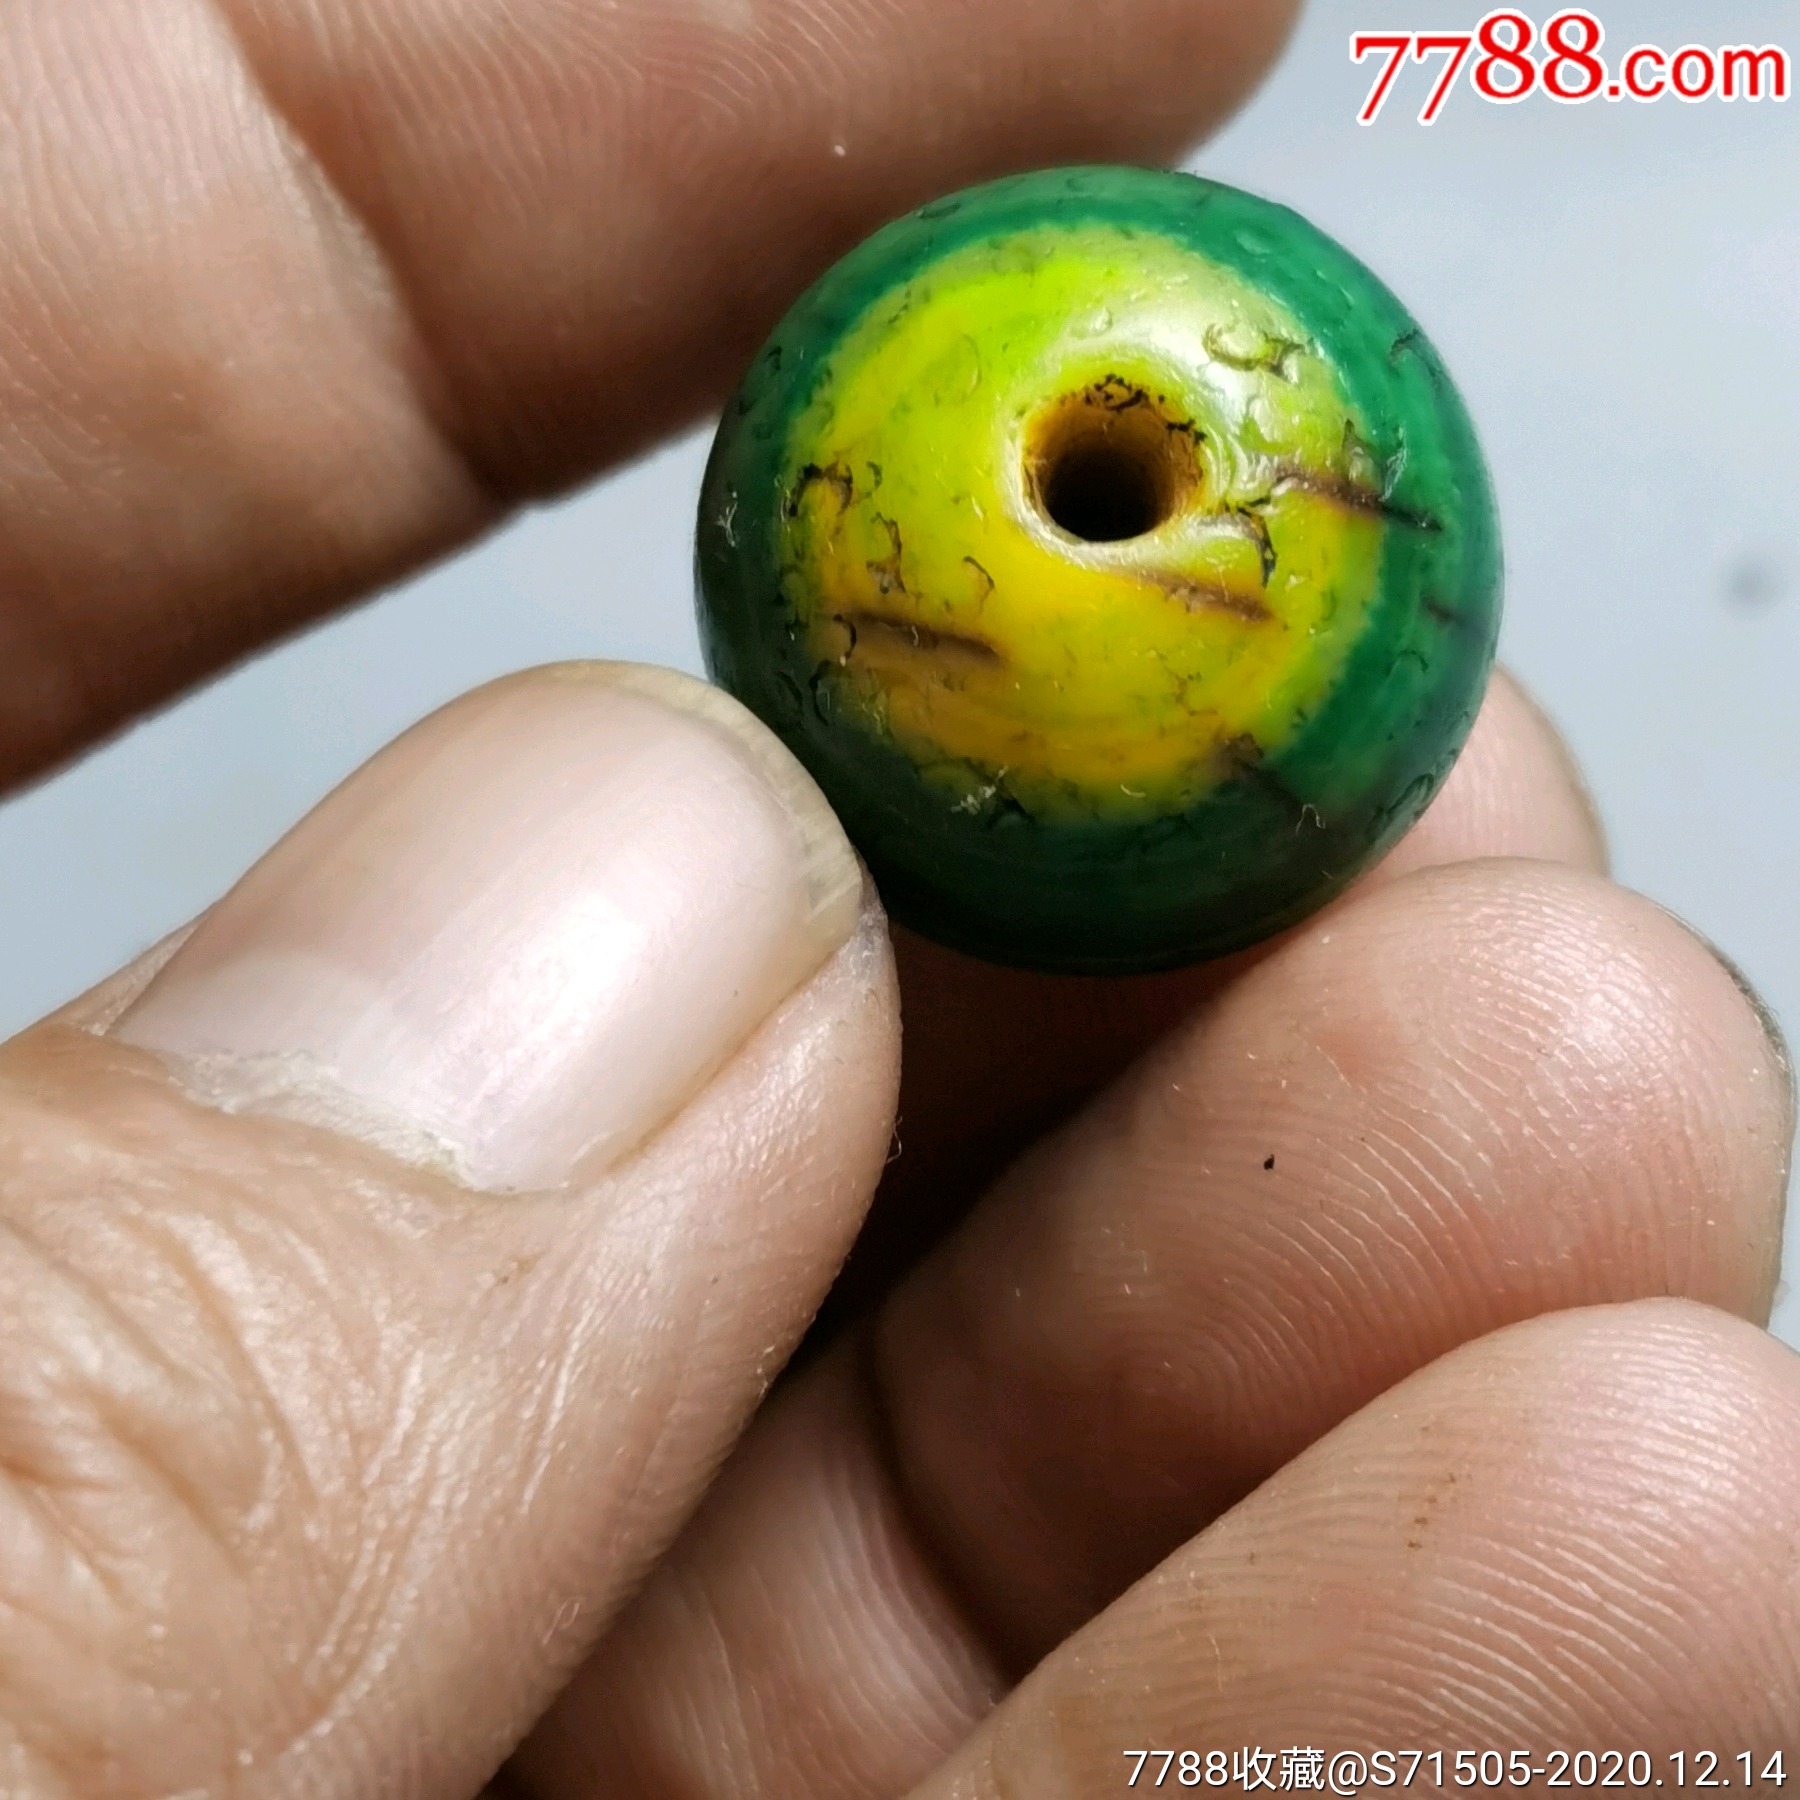 辽金老玛瑙黄绿珠子,有天然的眼睛